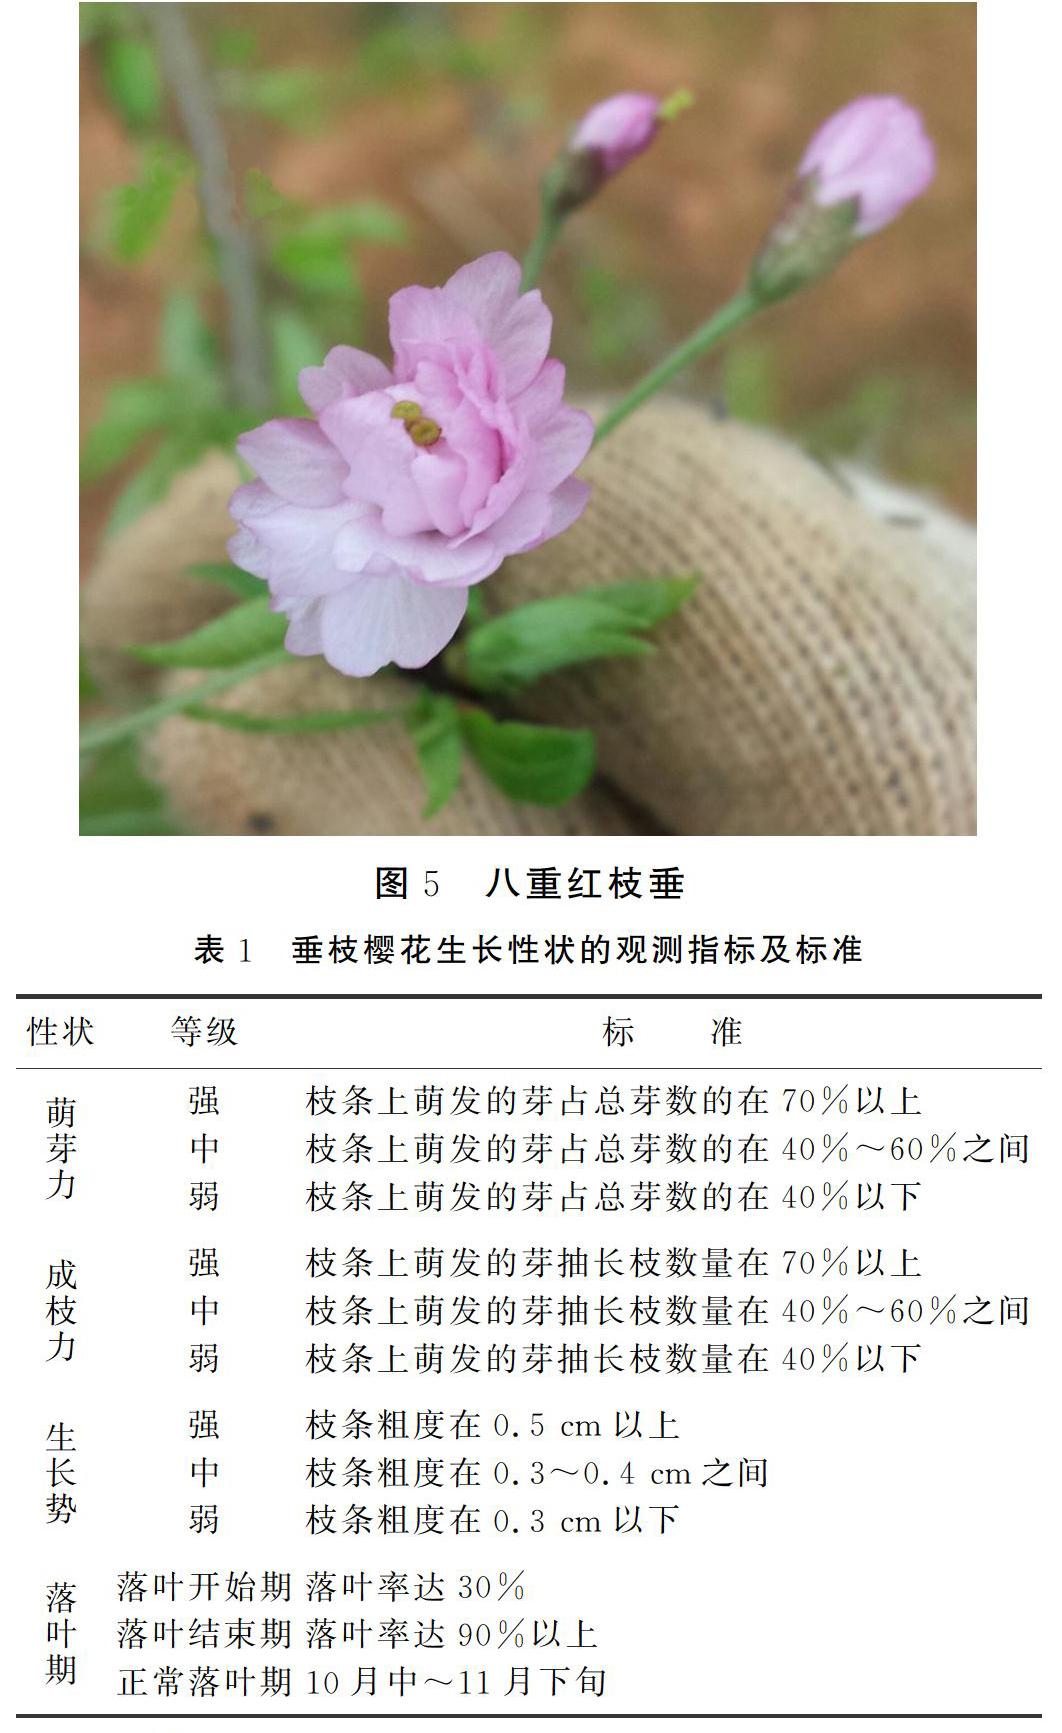 摘要:本文观测了从日本引进的5个垂枝樱花品种在武汉2014年和2015年